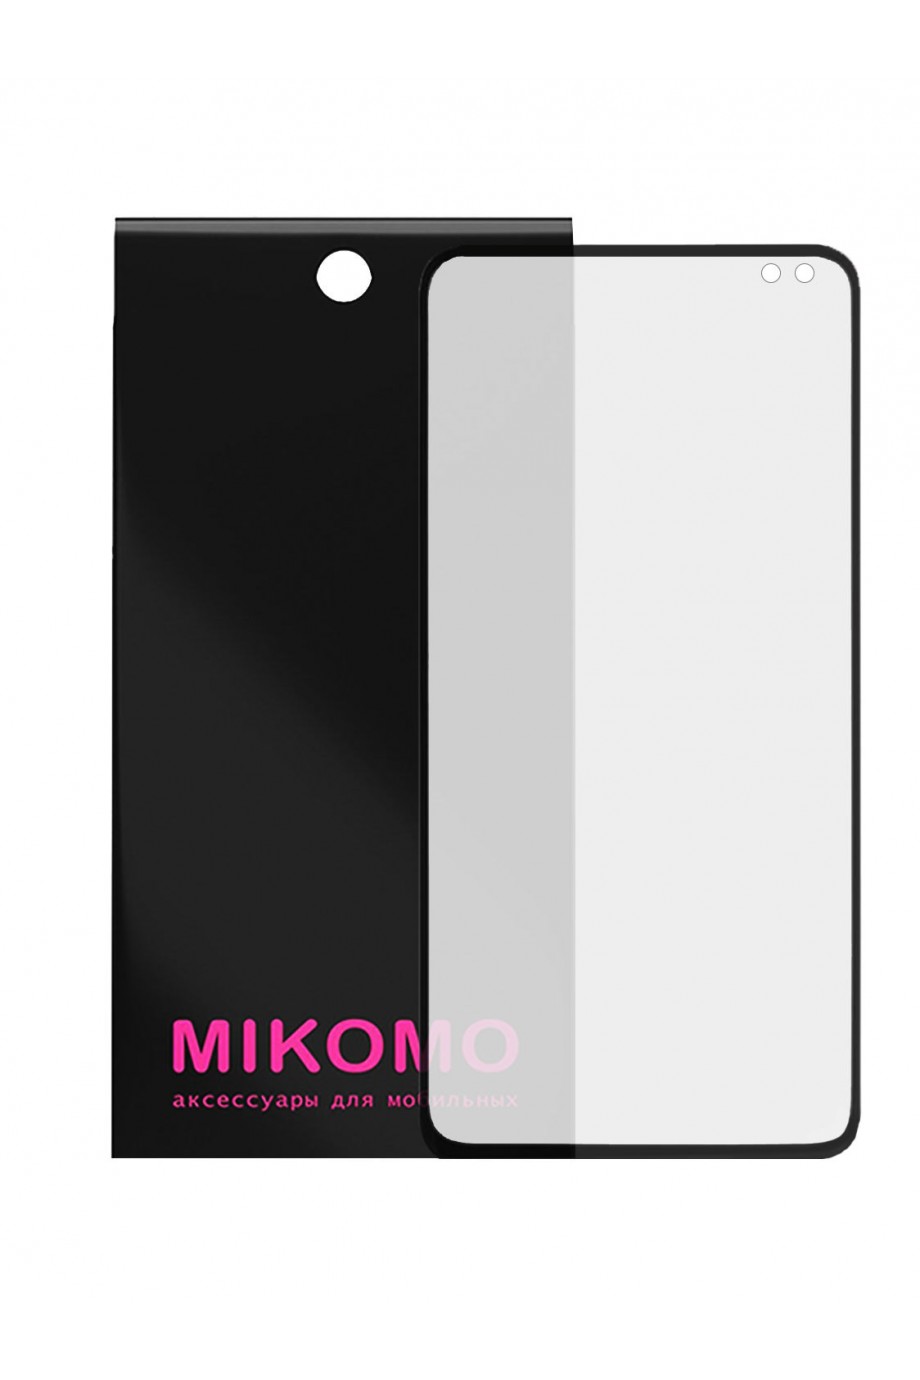 Защитная пленка 3D Mikomo для Samsung Galaxy S10 Plus, черная рамка, полный клей